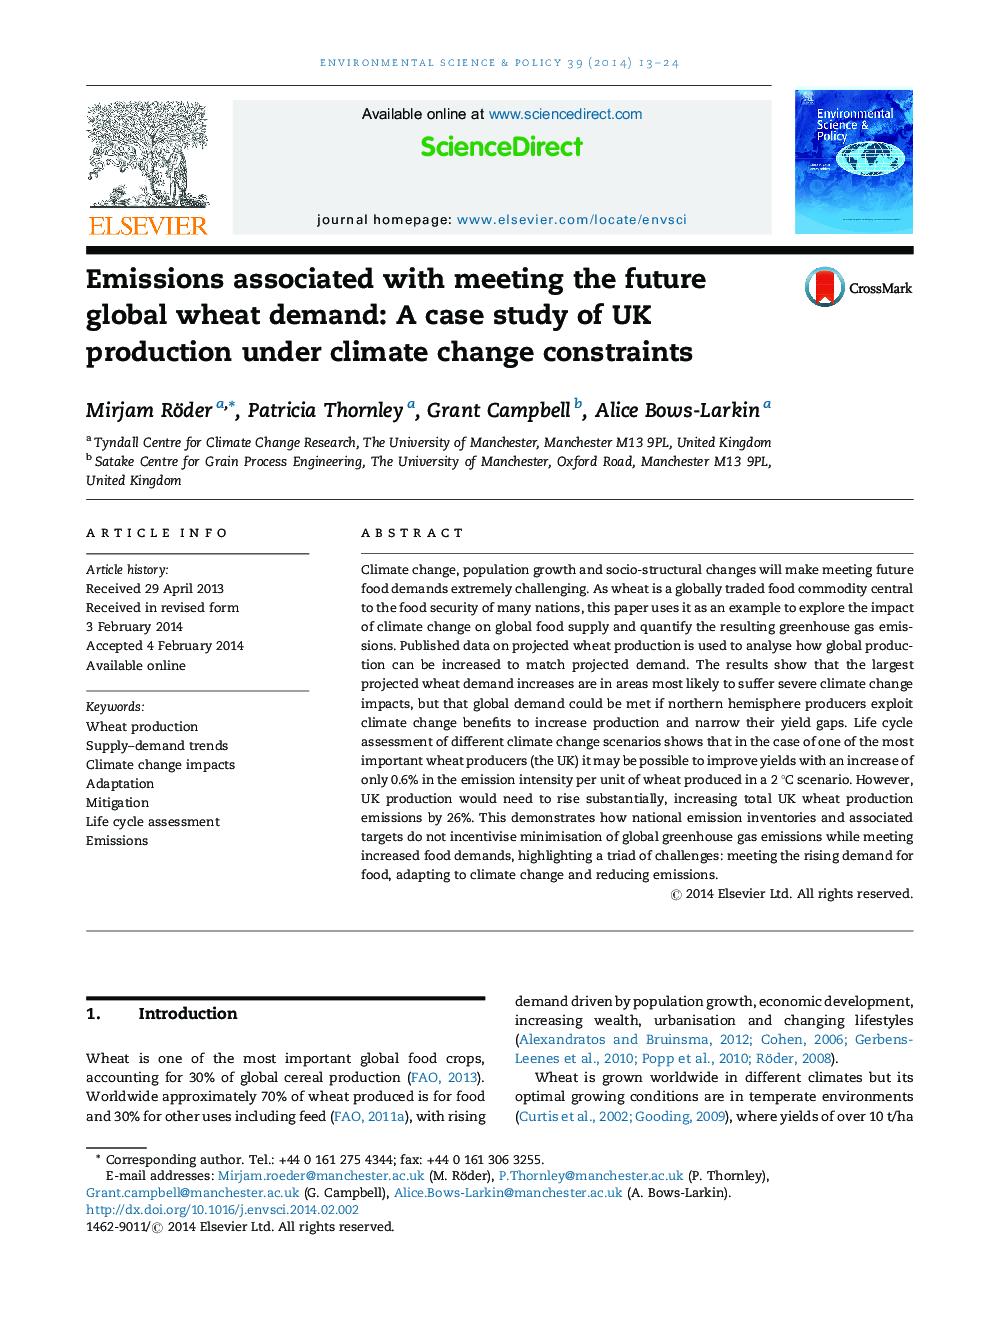 انتشار گازهای گلخانه ای مرتبط با رسیدگی به تقاضای جهانی گندم در آینده: مطالعه موردی تولید انگلستان تحت محدودیت تغییرات آب و هوایی 